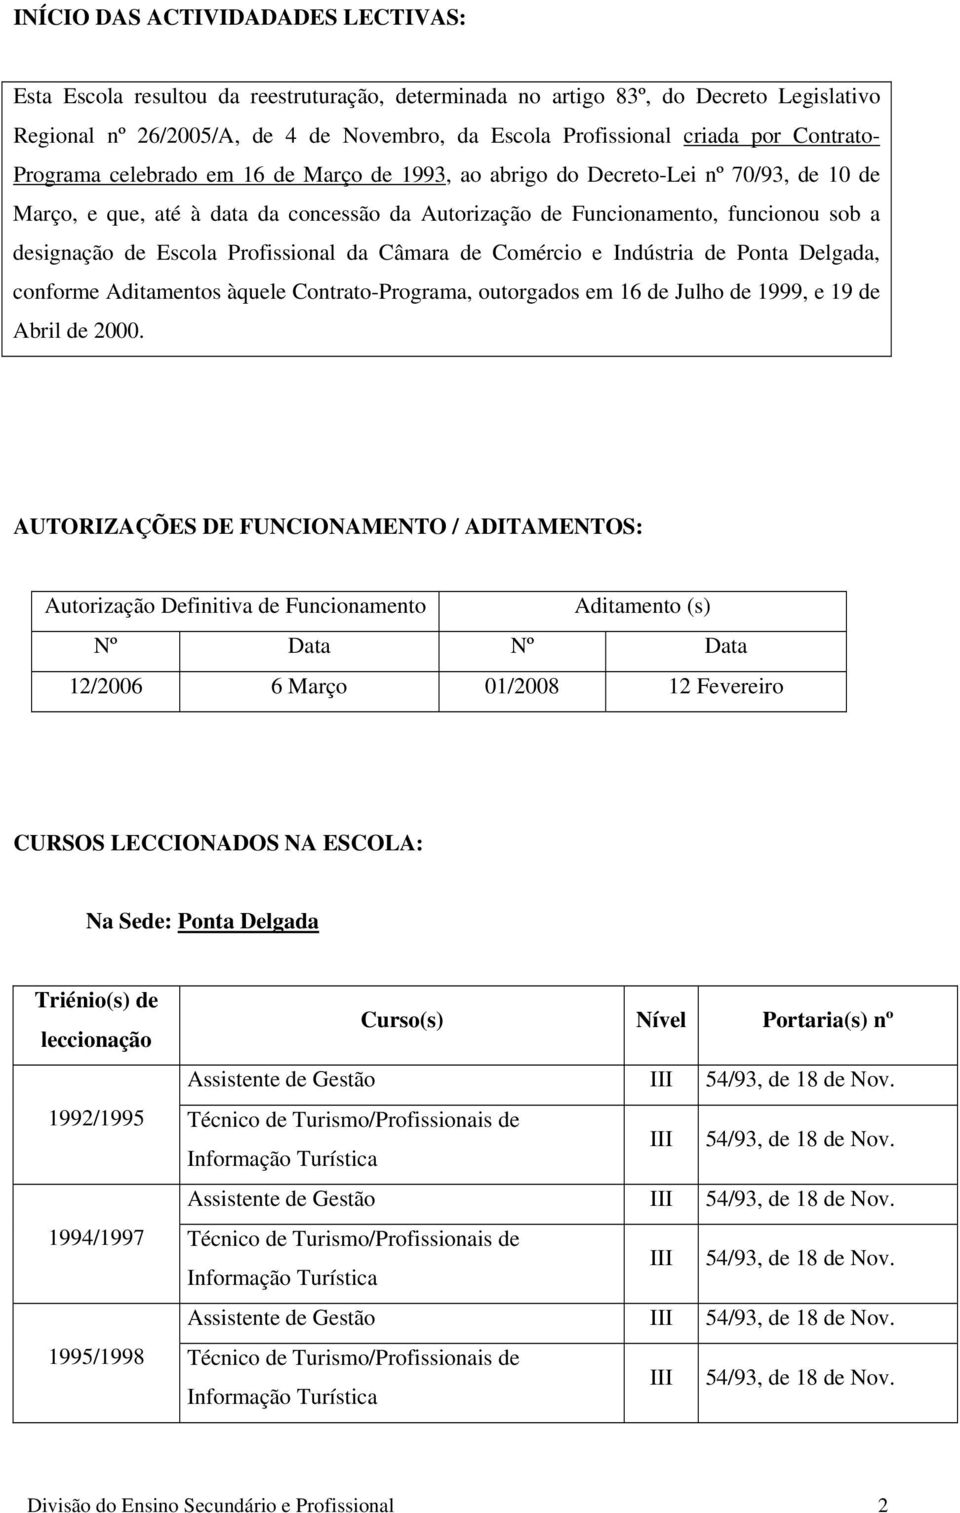 Escola Profissional da Câmara de Comércio e Indústria de Ponta Delgada, conforme Aditamentos àquele Contrato-Programa, outorgados em 16 de Julho de 1999, e 19 de Abril de 2000.